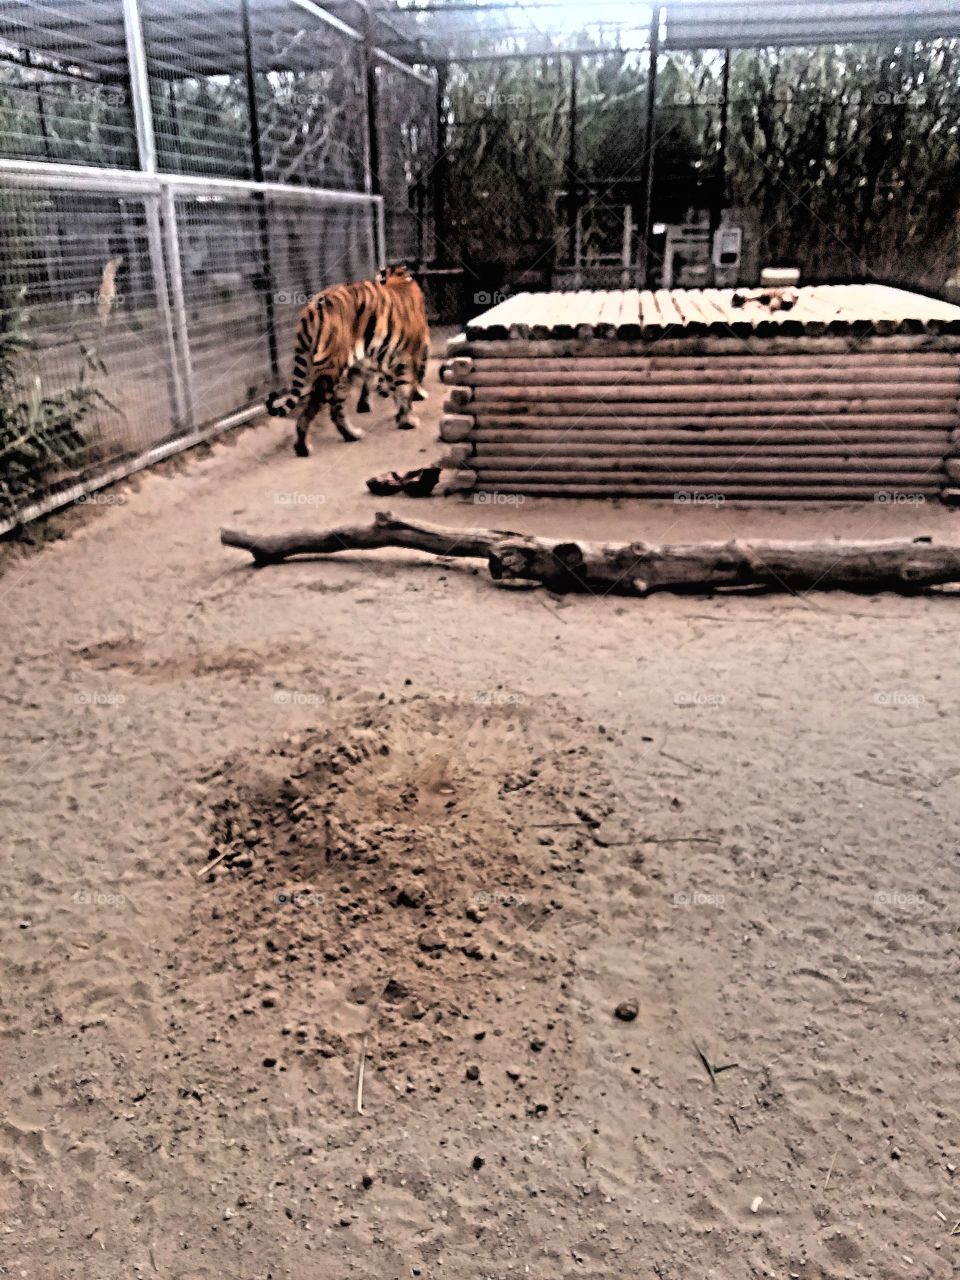 tiger walking around